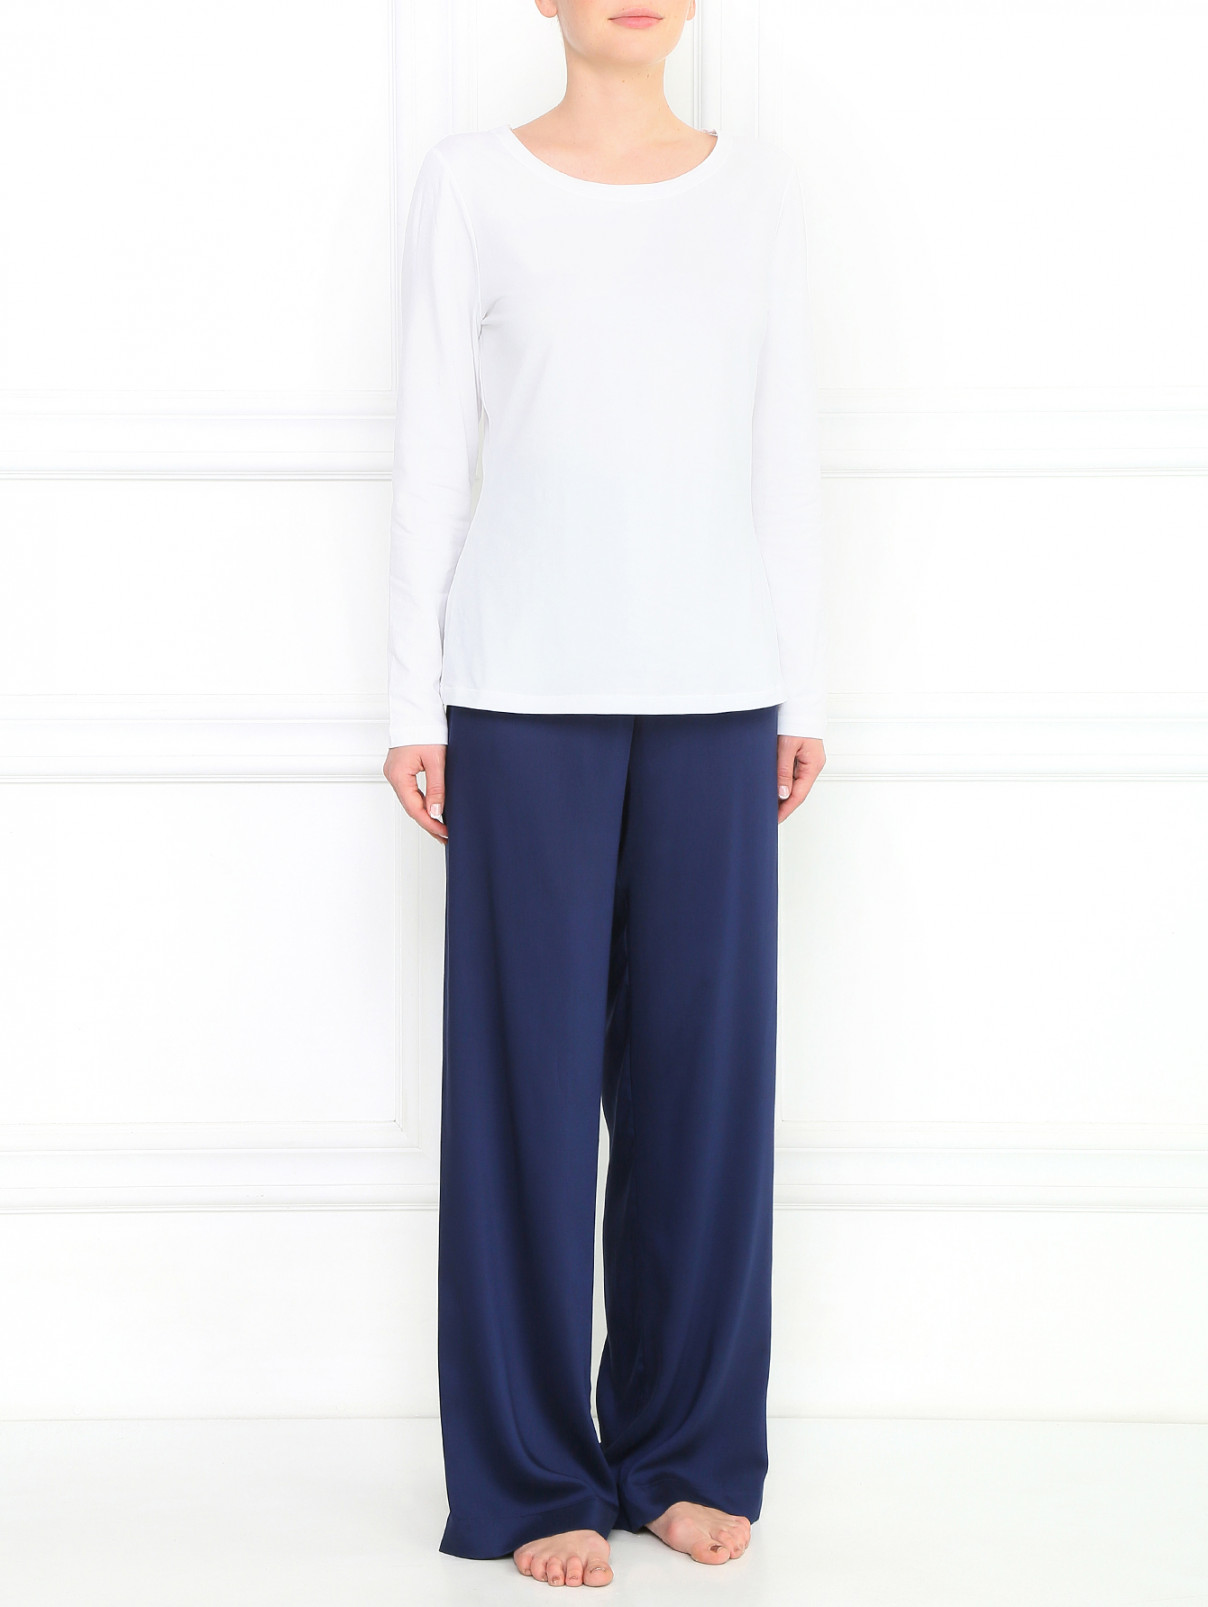 Широкие брюки на резинке La Perla  –  Модель Общий вид  – Цвет:  Синий